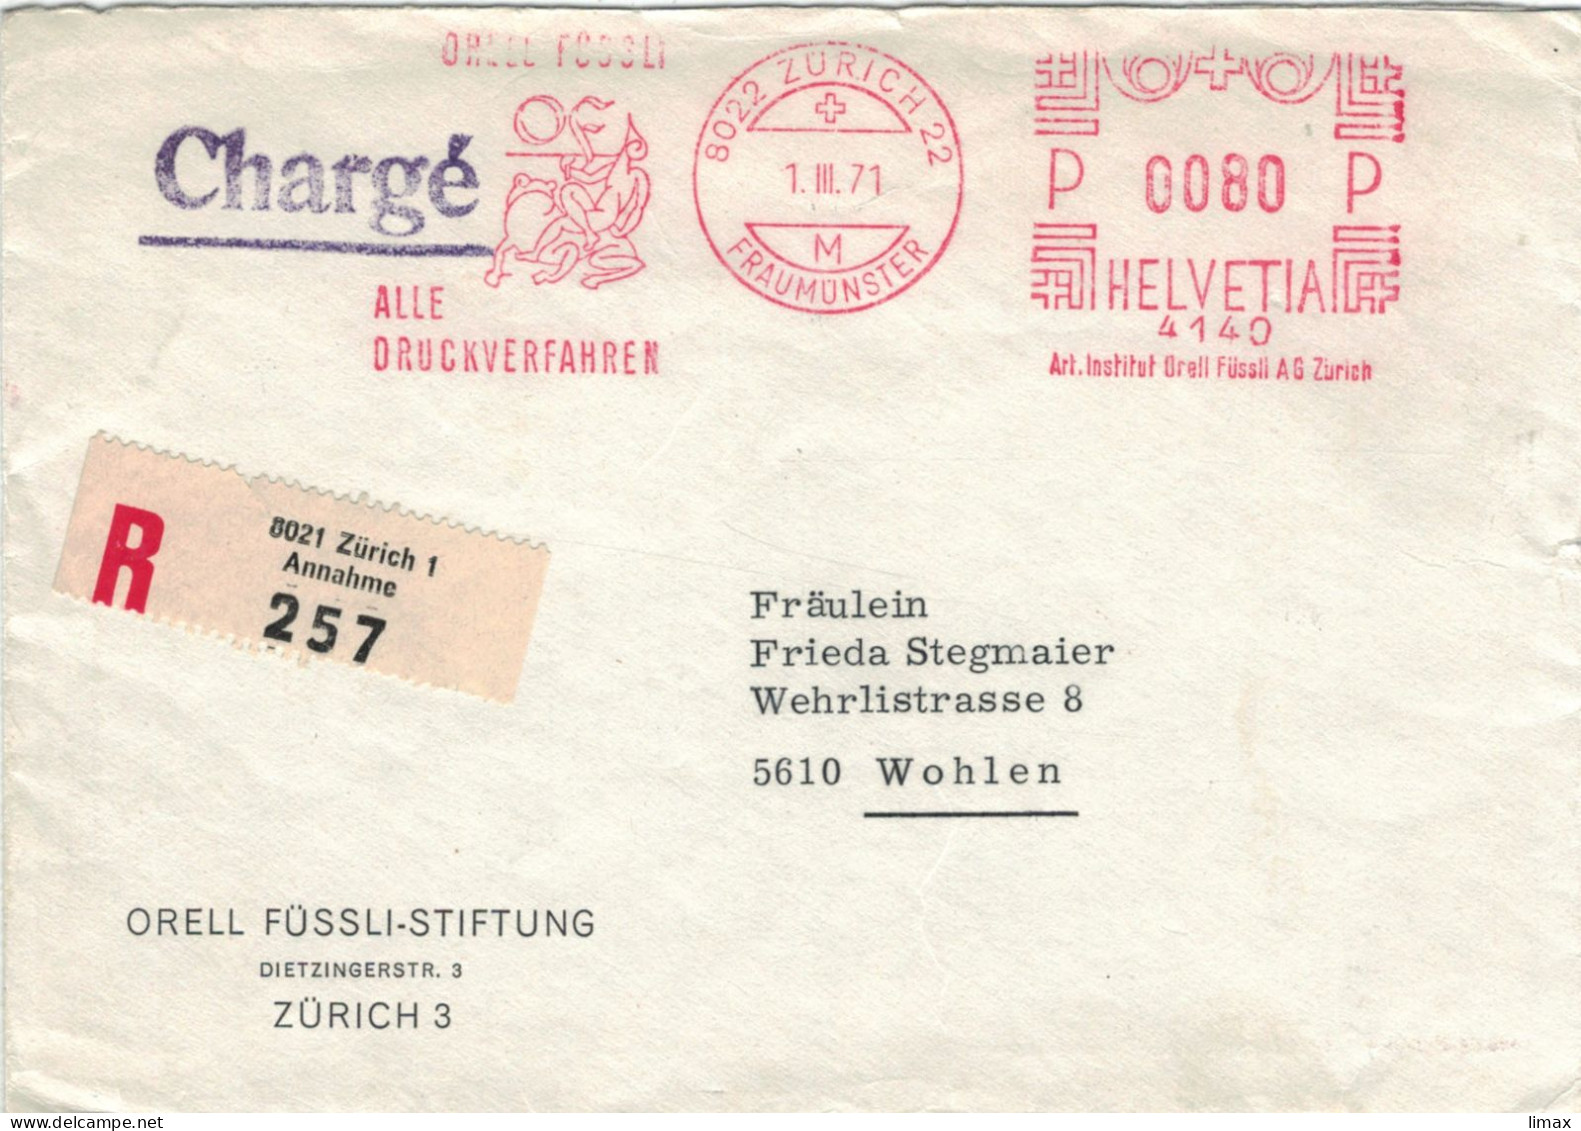 Orell Füssli Alle Druckverfahren 8022 Zürich Fraumünster 1971 No. 4140 - Frosch - Vgl. Froschauersche Druckerei - Affrancature Meccaniche